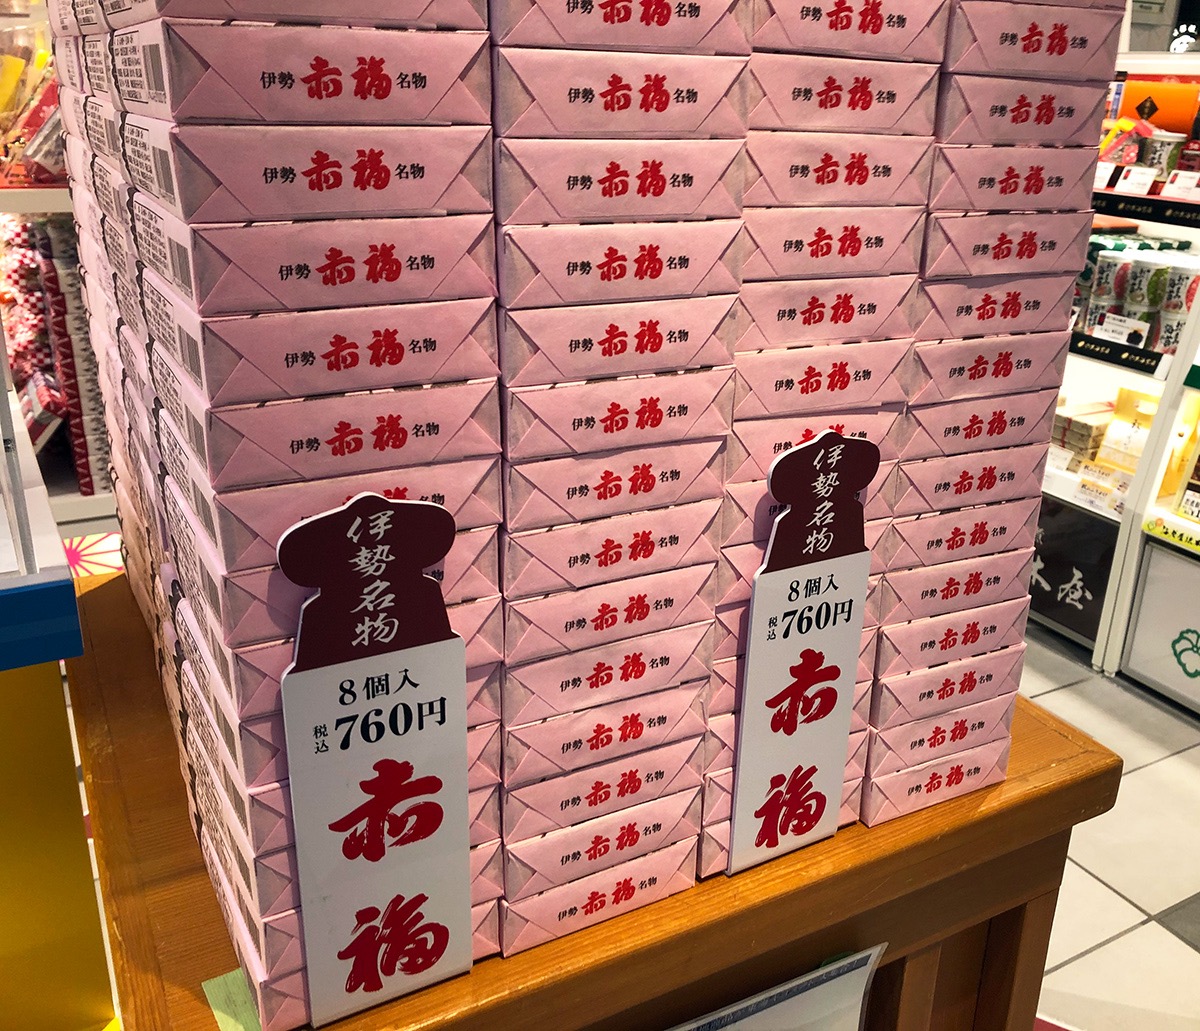 朗報 今なら東京駅で 赤福餅 が買える 期間限定につき残り4日のみ 店員さんに 何時ごろ売り切れるんですか と聞いてみたら ロケットニュース24